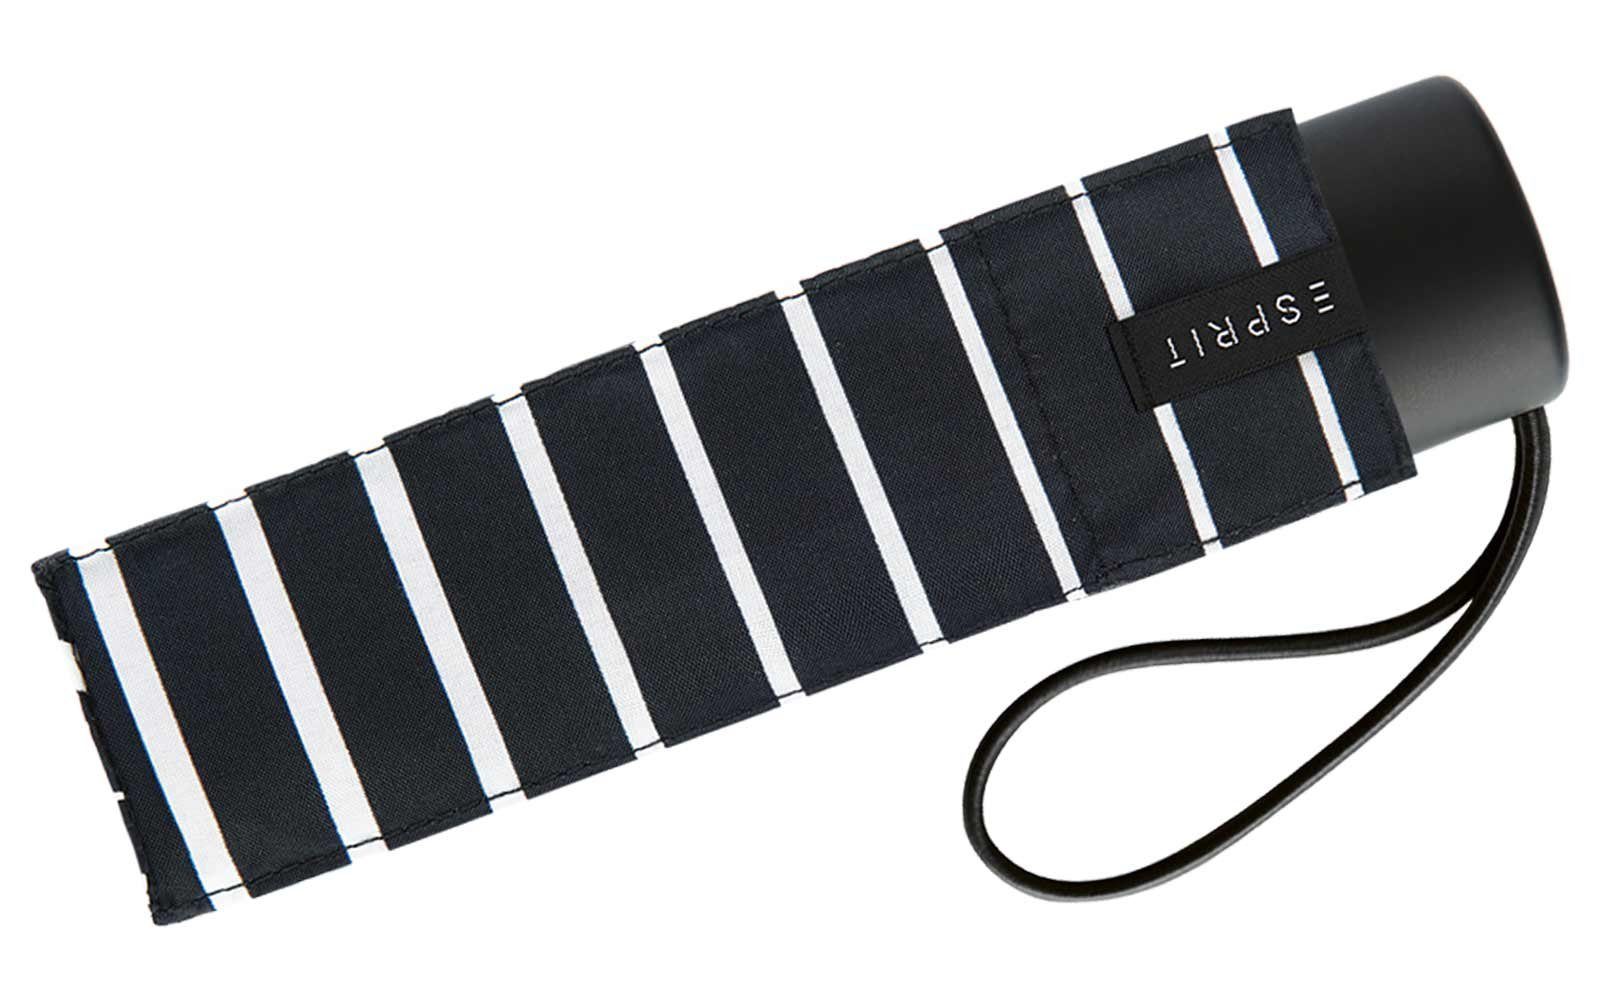 Degradee schwarz-weiß Super Petito Esprit - klein, moderner Damen Taschenregenschirm - Stripe black, Mini winzig in Streifen-Optik